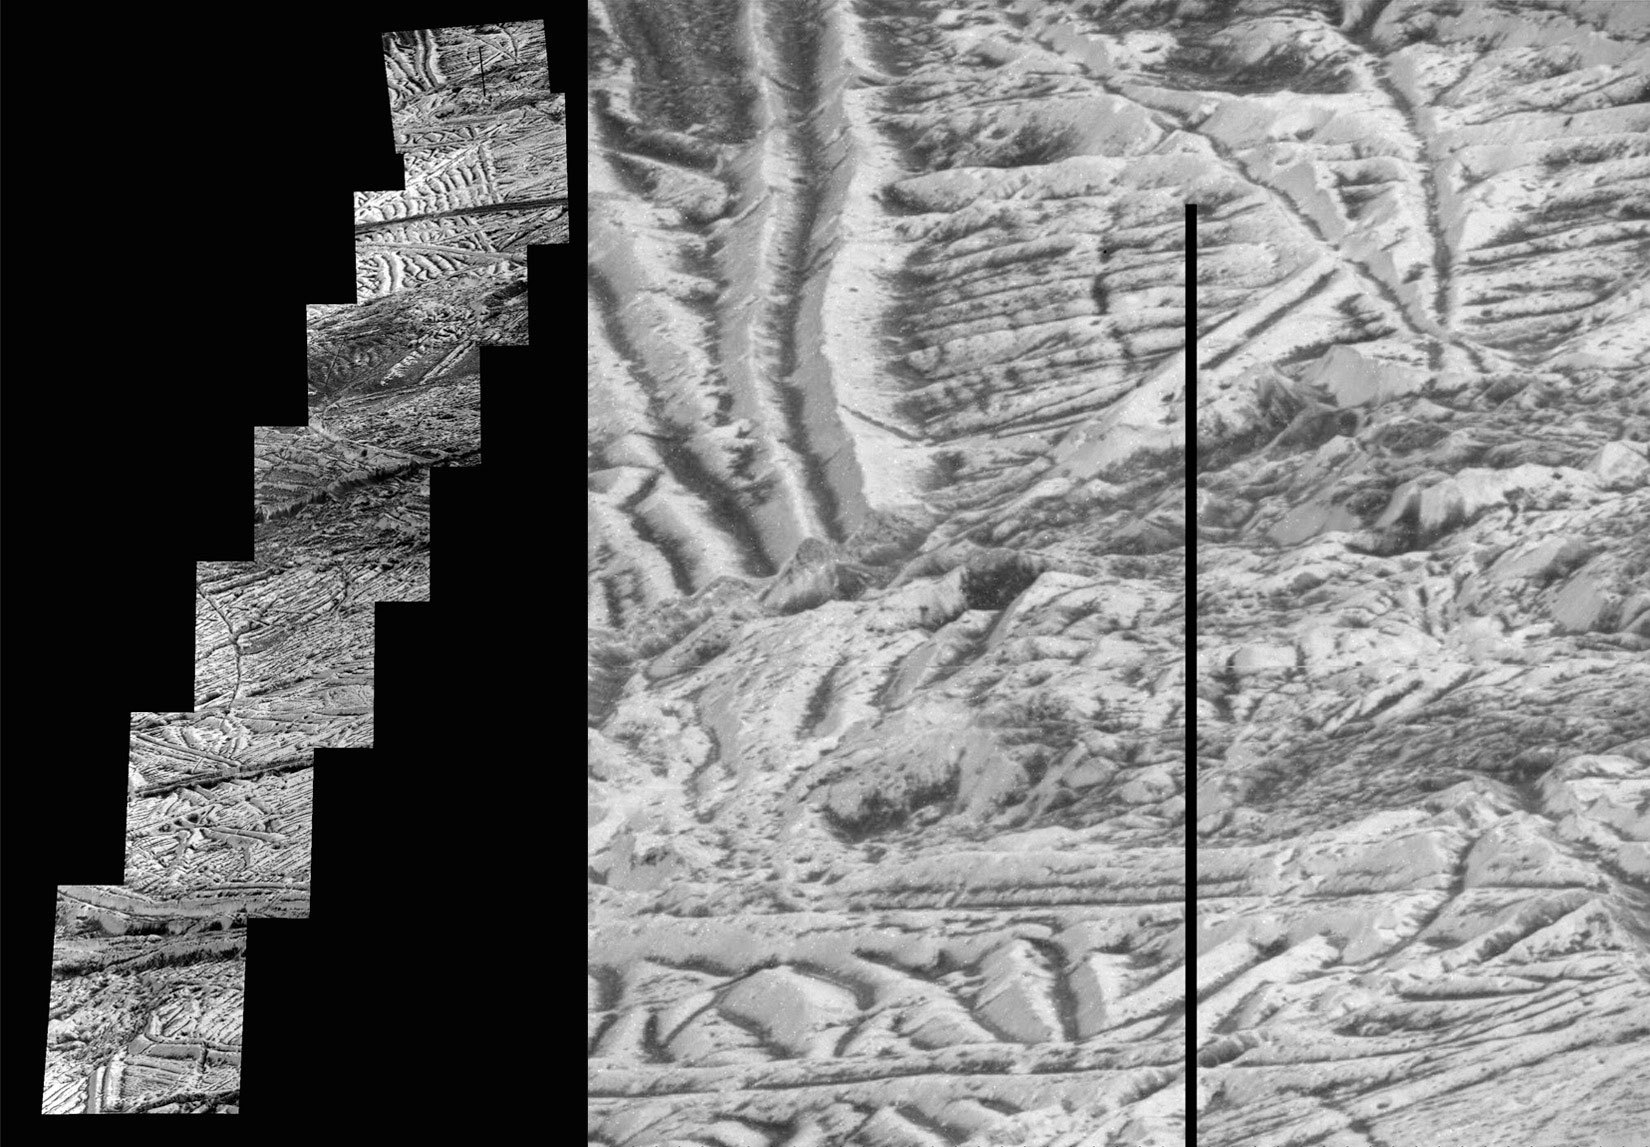 Tato mozaika snímků obsahuje ty nejdetailnější snímky jupiterova měsíce Europa, které pořídila sonda Galileo. Snímek, který se nachází úplně nahoře, má nejvyšší dostupné rozlišení 6 metrů na obrazový bod. Dalších sedm snímků má rozlišení 12 metrů na 